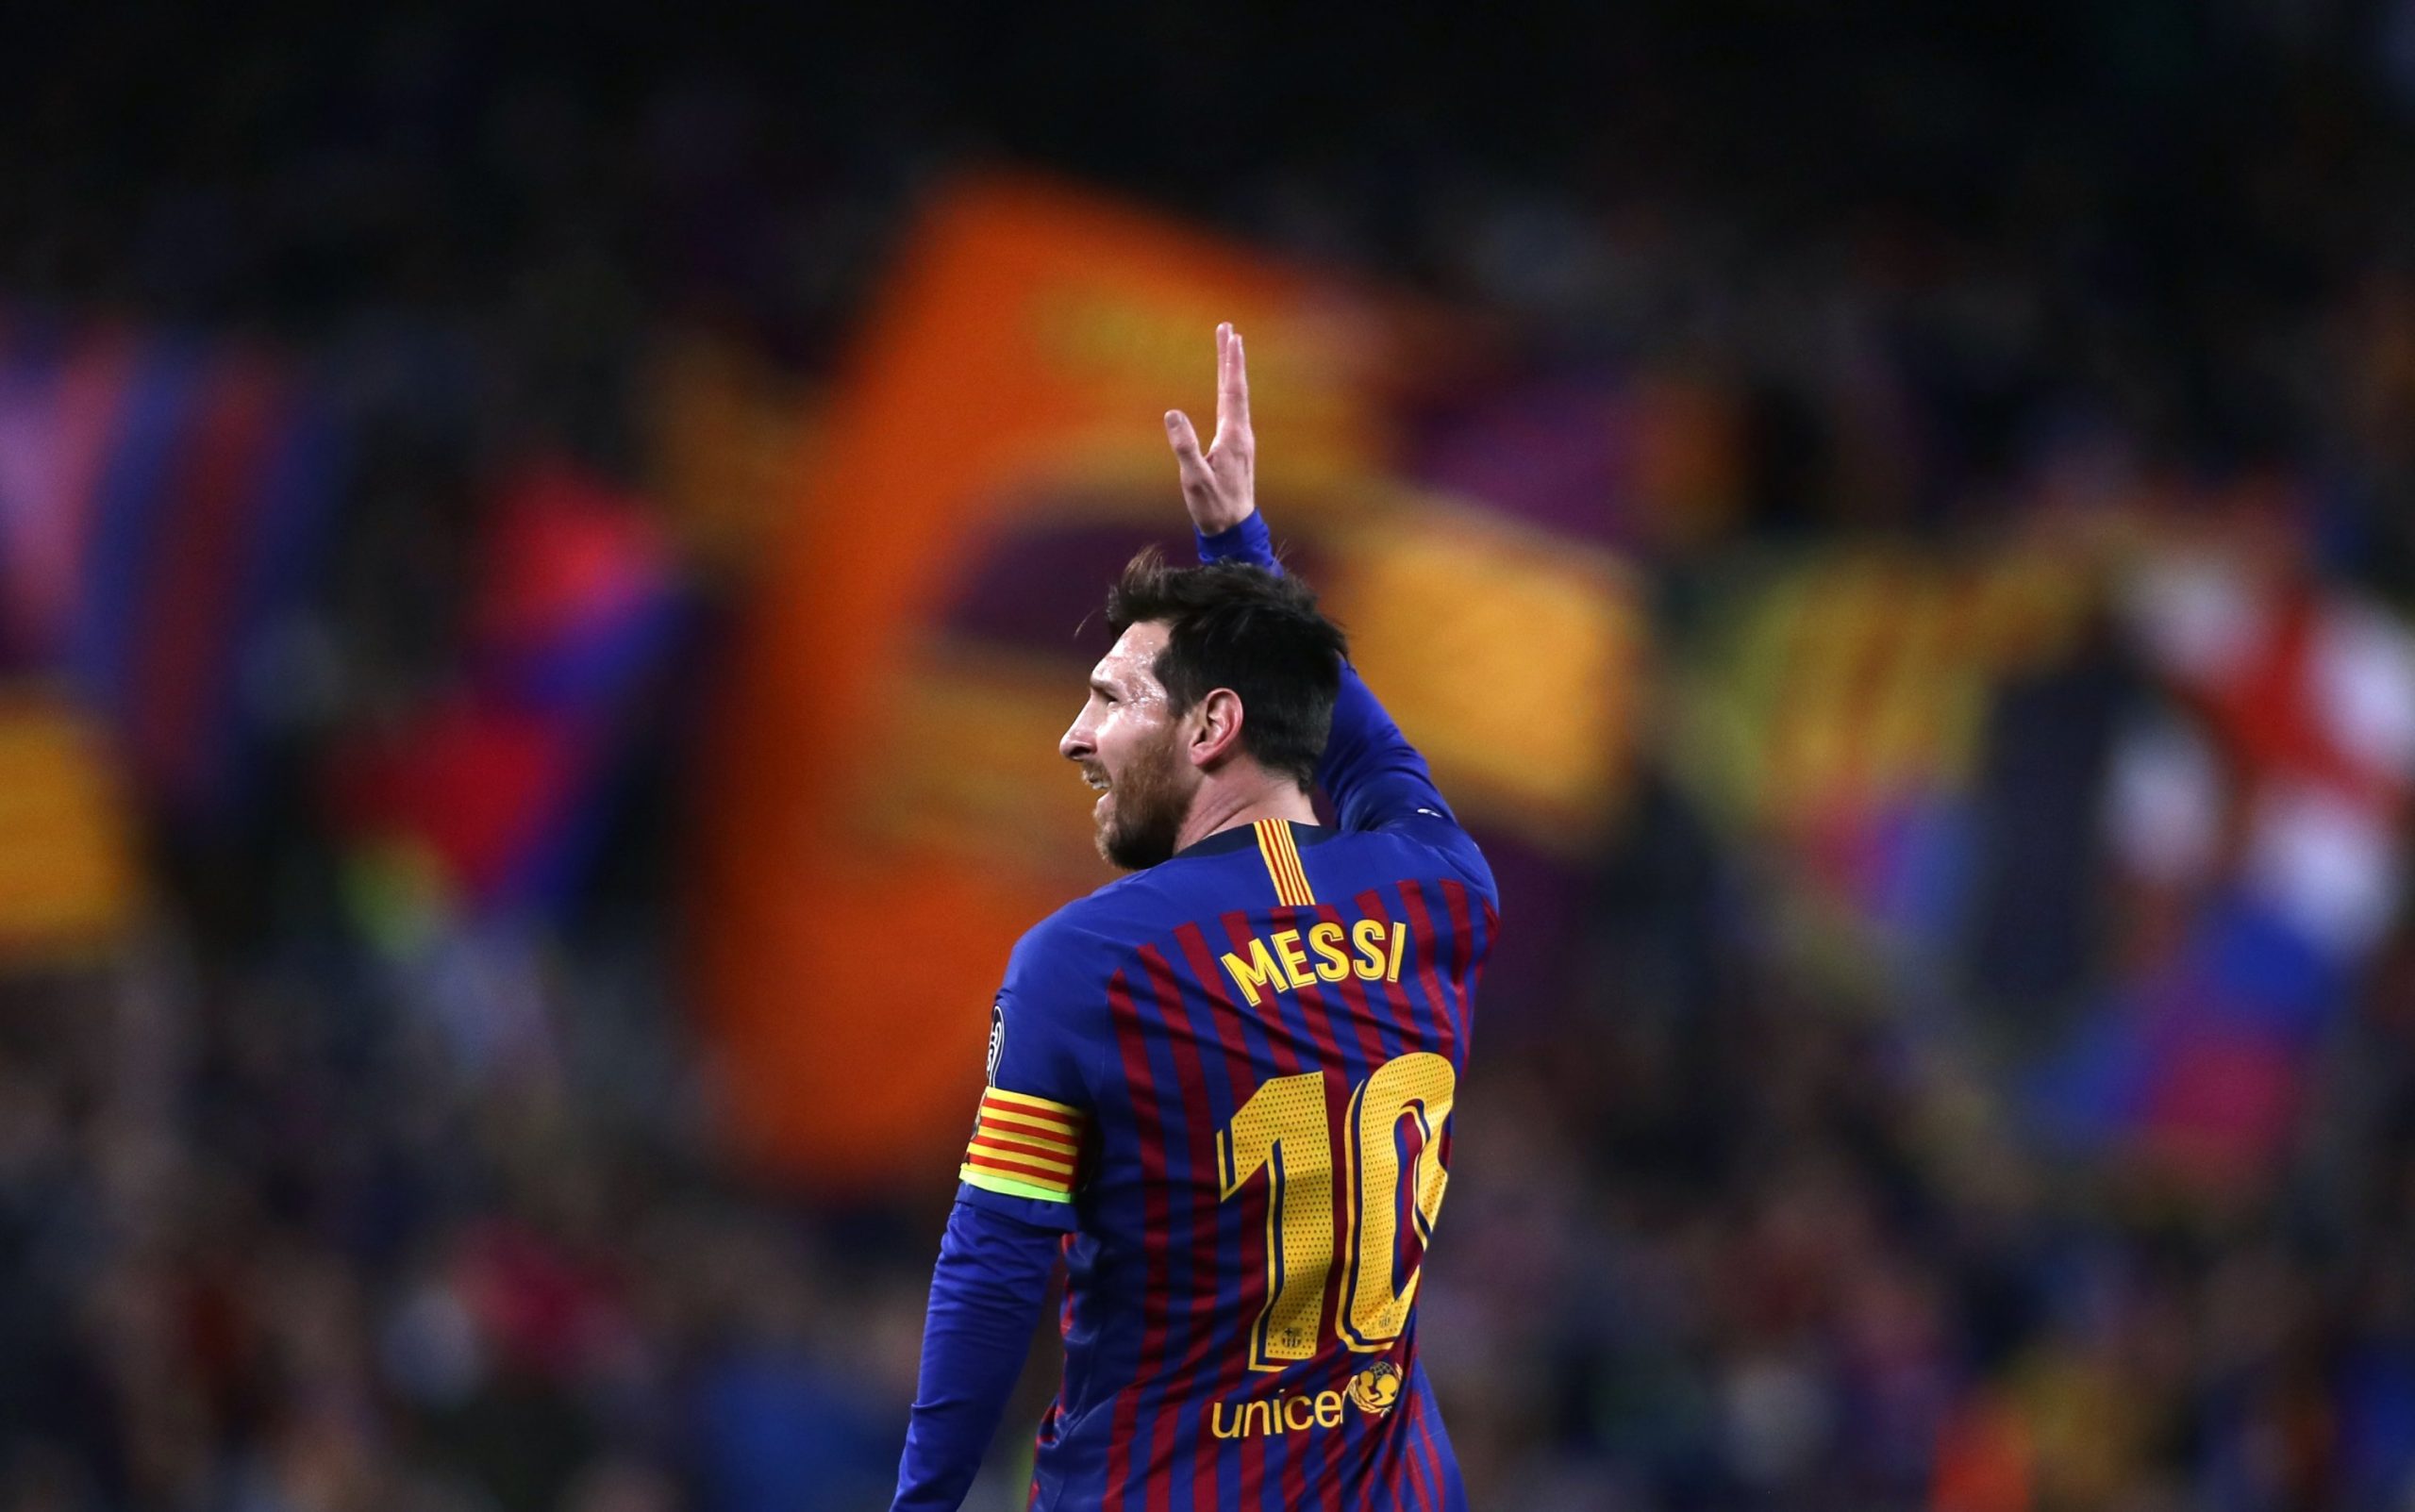 “Ne me siguri mund ta bëjmë atë”, zëvendëspresidenti i Ekonomisë i Barcelonës për transferimin e mundshëm të Messit